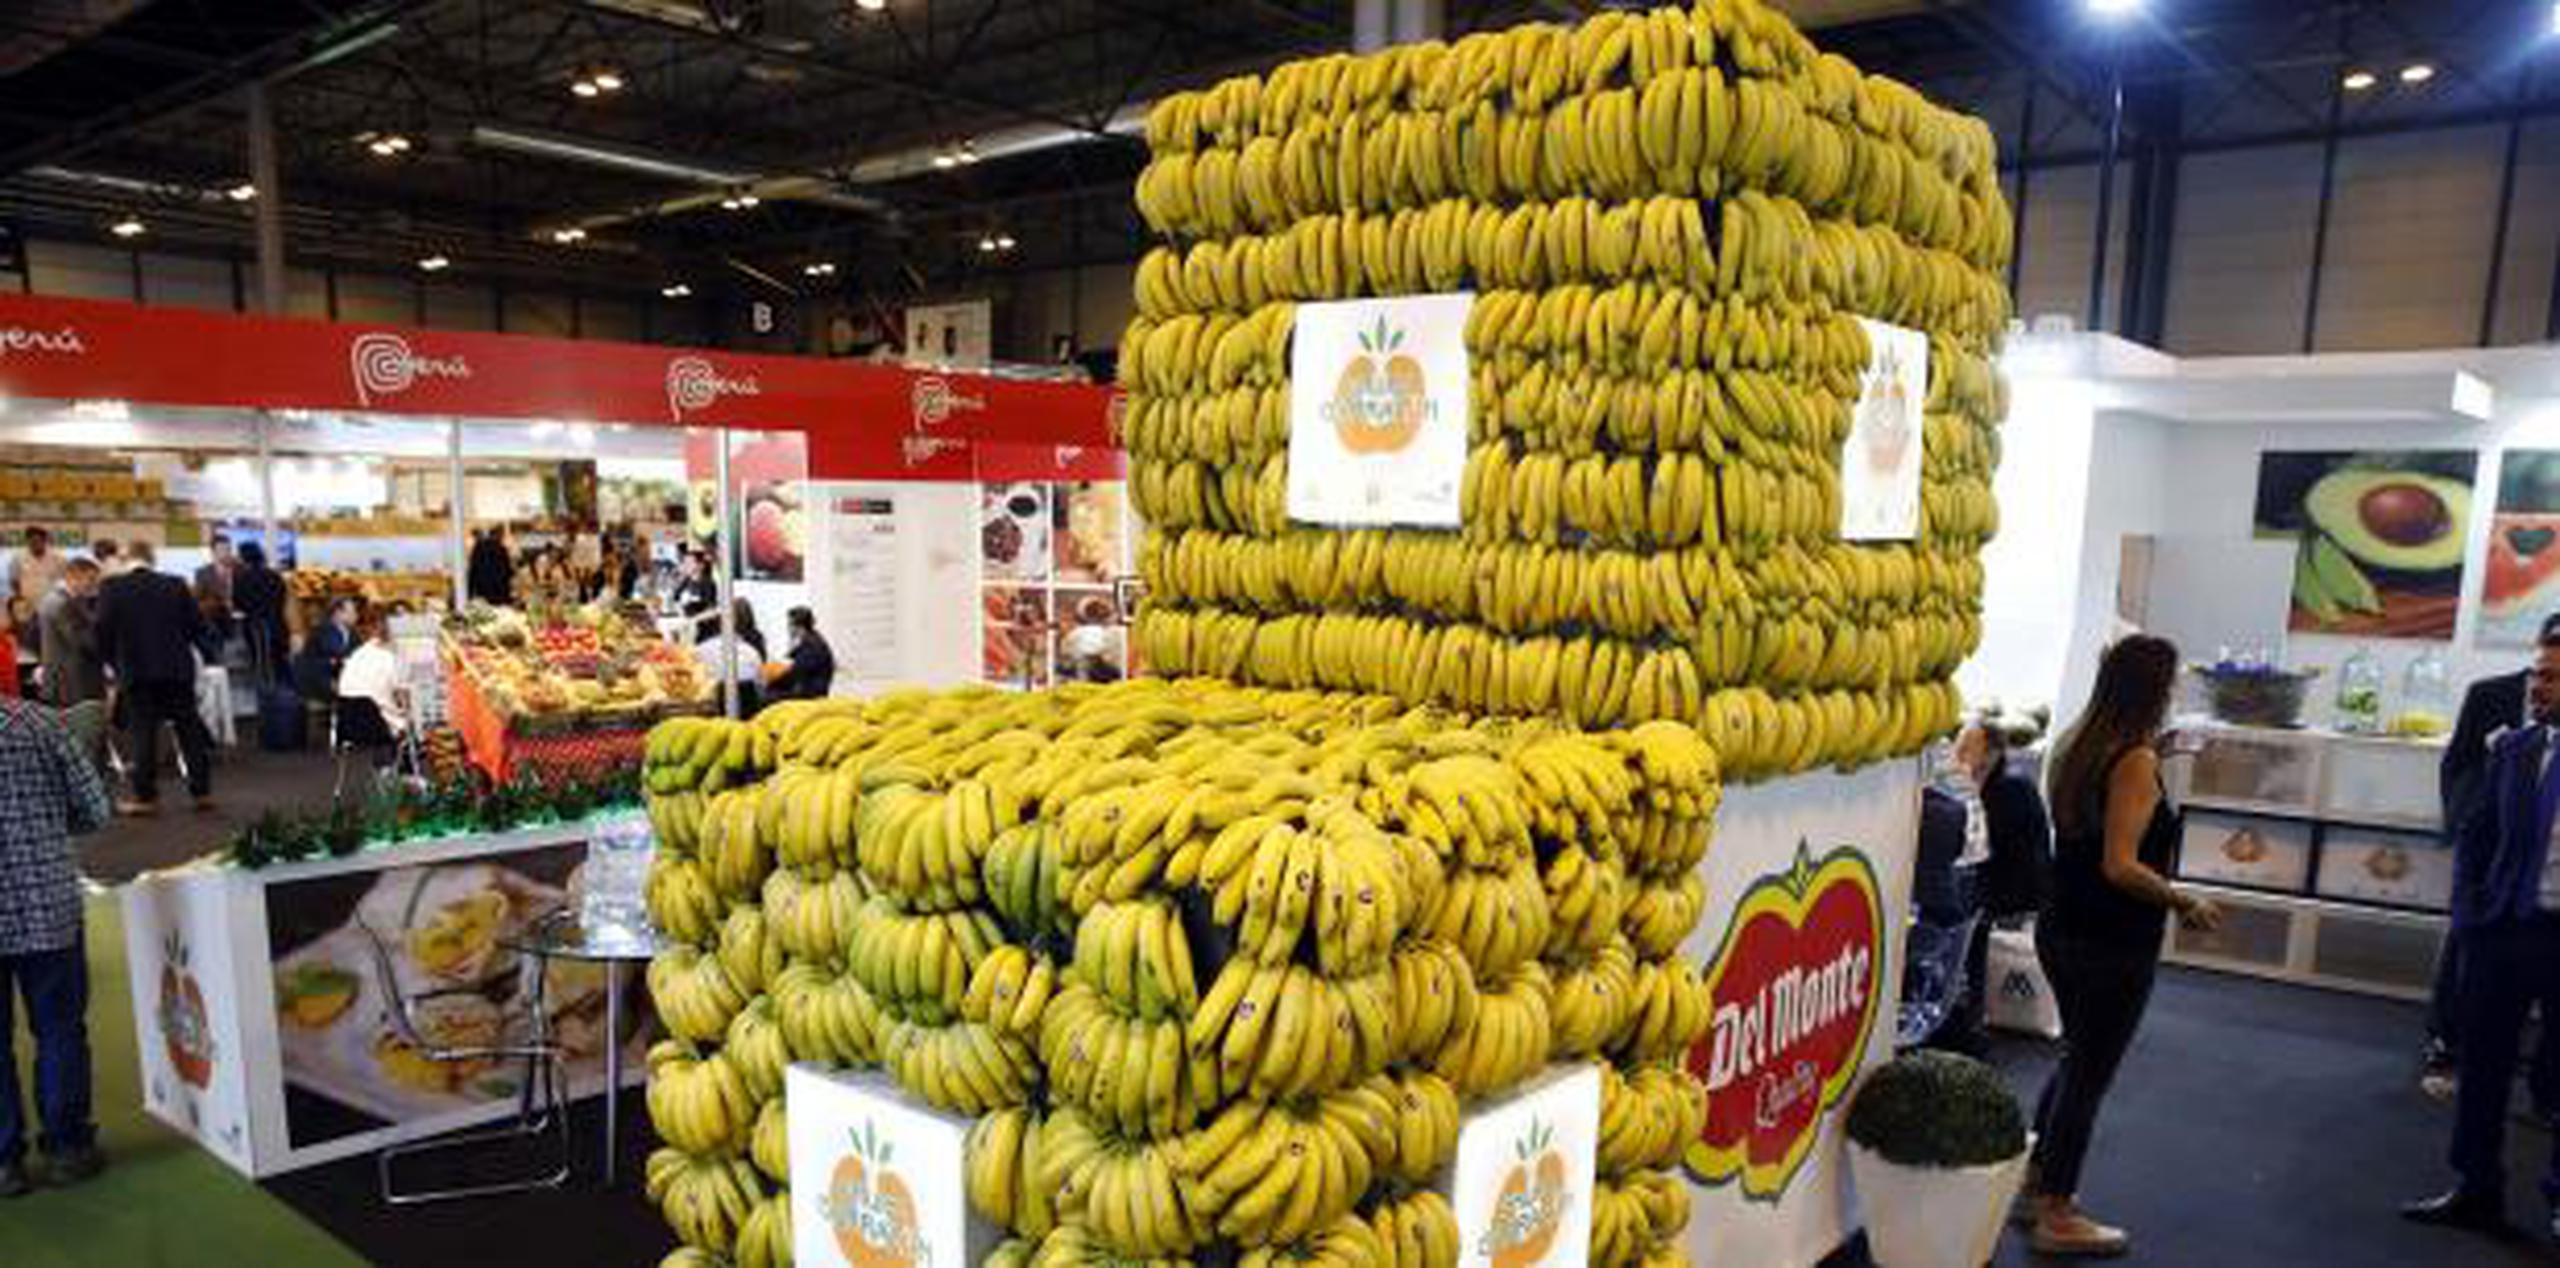 La producción de guineos se da en 135 países y en territorios en zonas tropicales y subtropicales. Actualmente, el comercio de exportación internacional de banano asciende a más de 10 billones de dólares, de acuerdo con la FAO. (EFE)